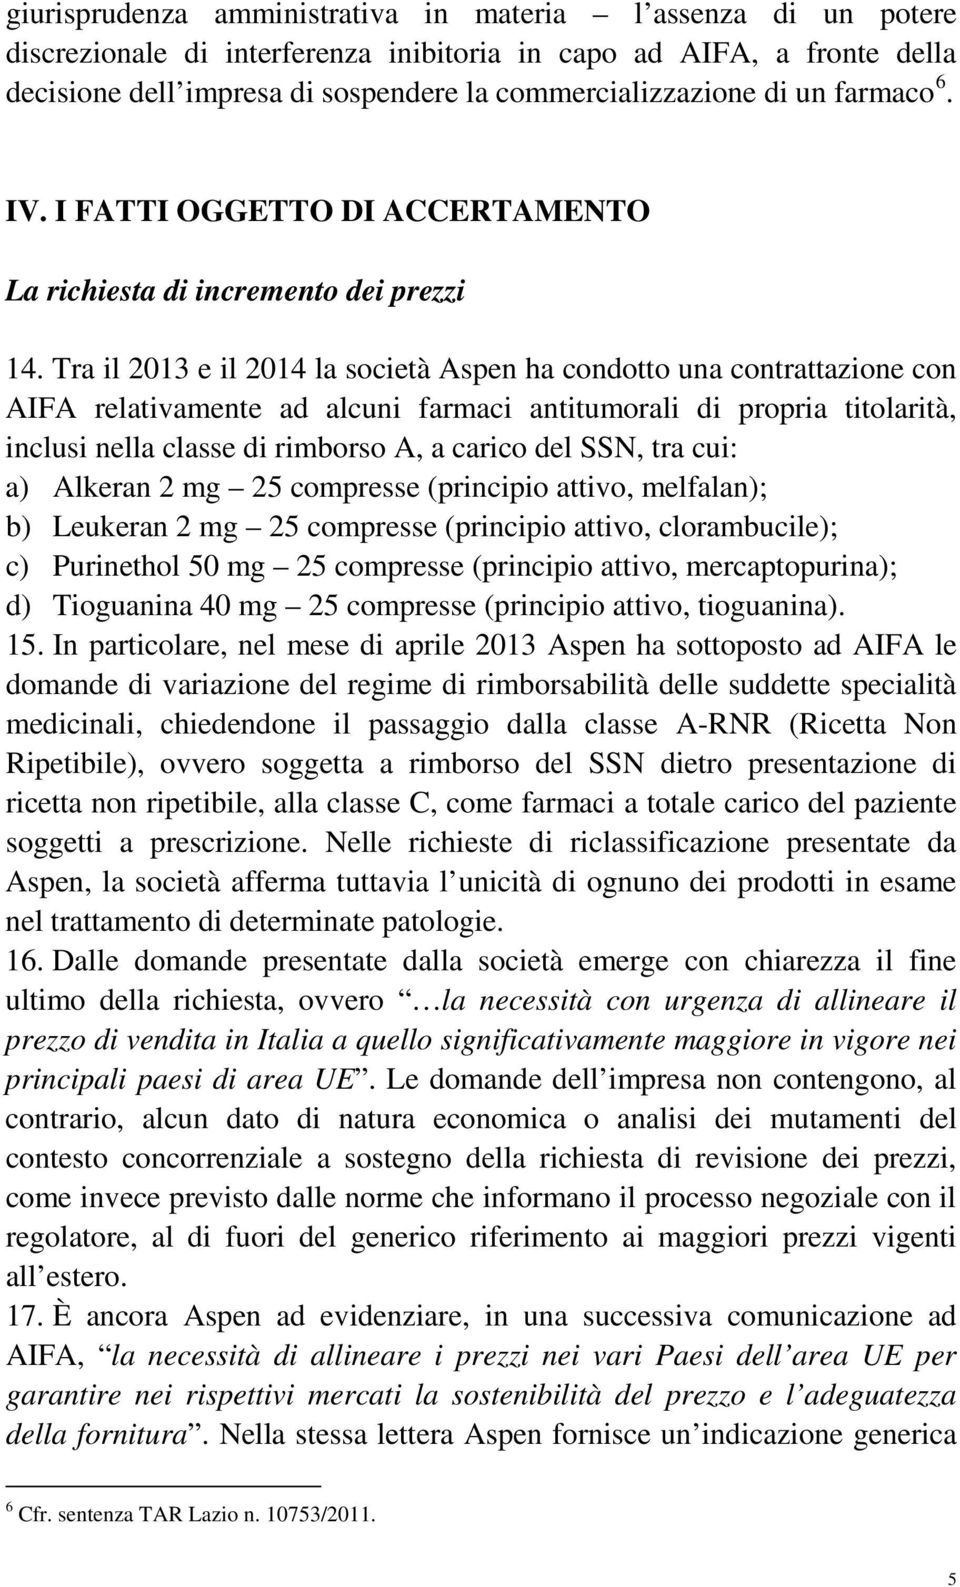 Tra il 2013 e il 2014 la società Aspen ha condotto una contrattazione con AIFA relativamente ad alcuni farmaci antitumorali di propria titolarità, inclusi nella classe di rimborso A, a carico del